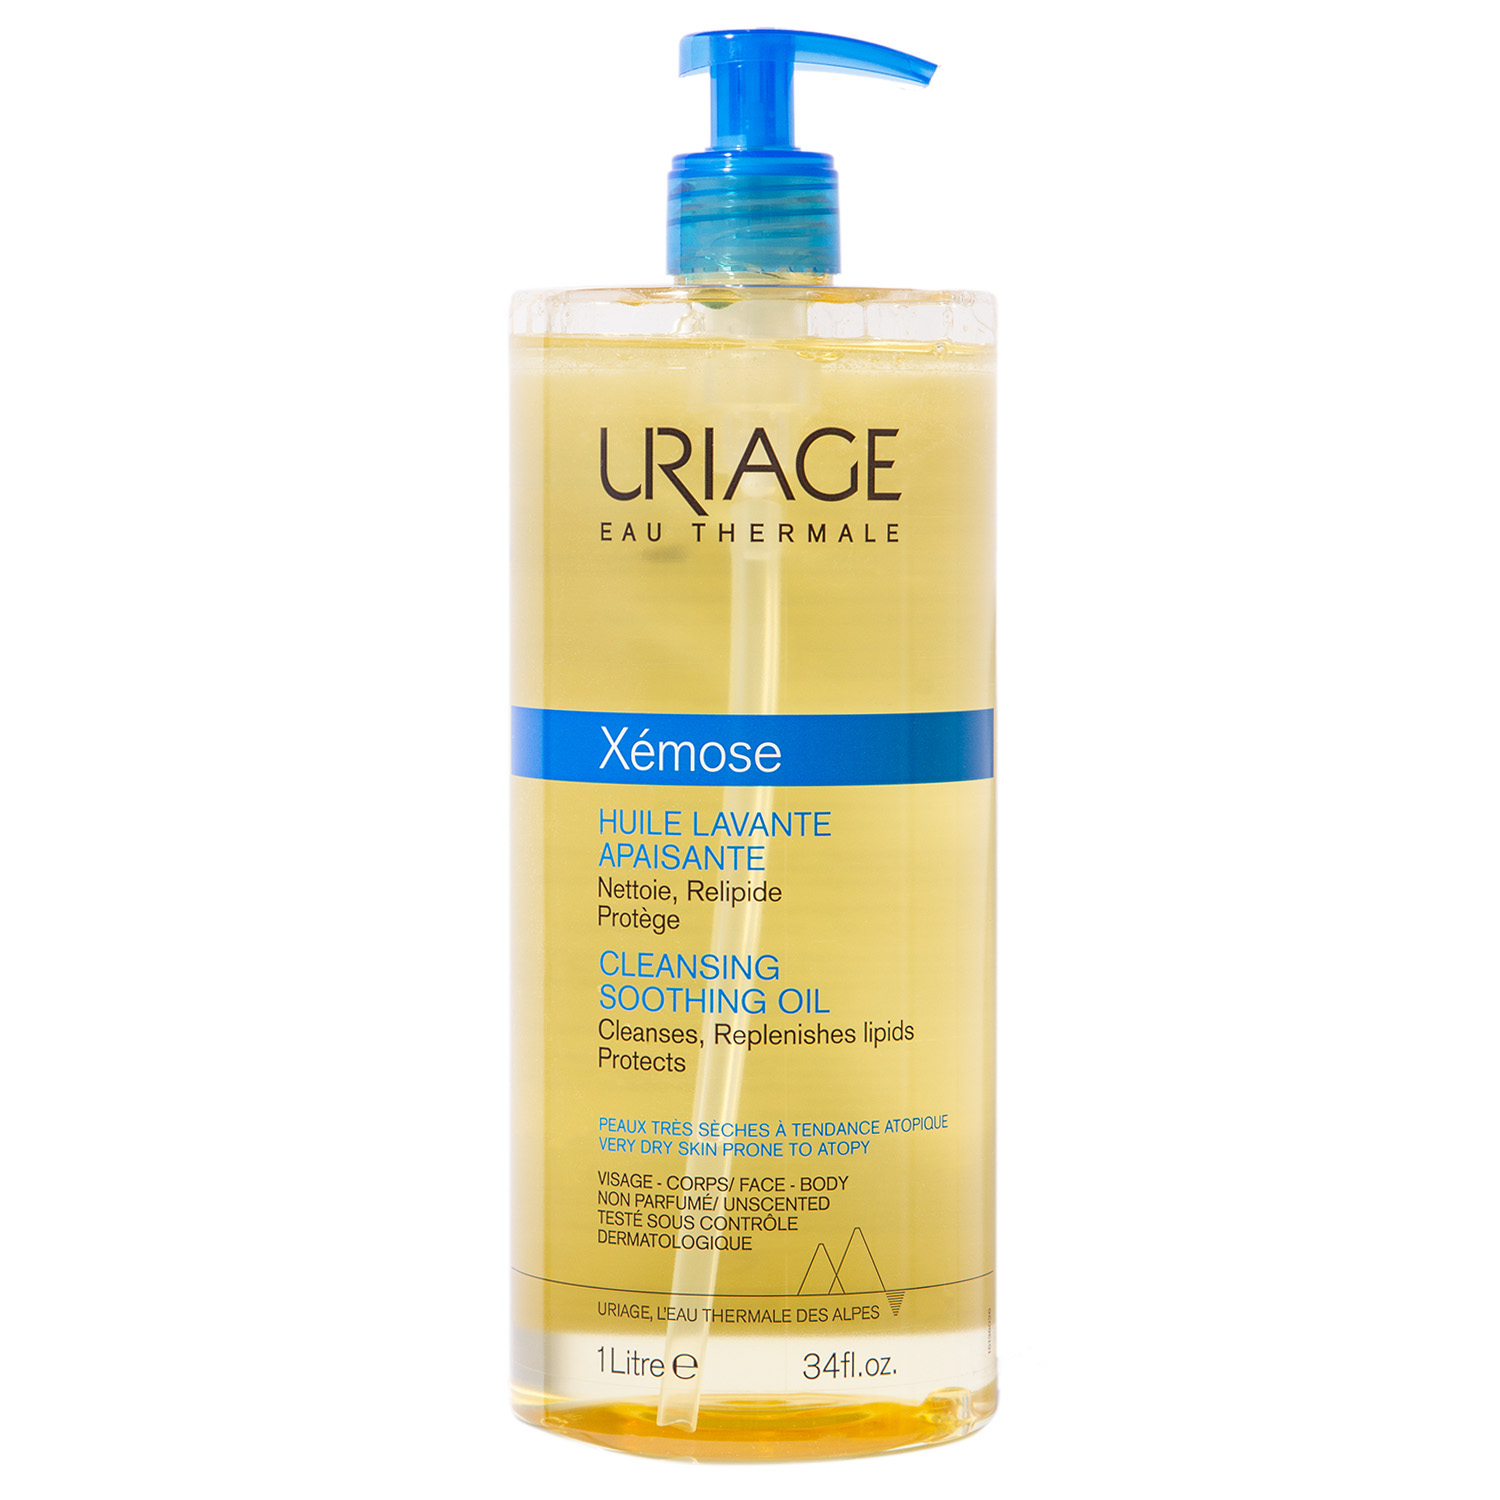 Uriage Очищающее успокаивающее масло, 1 л (Uriage, Xemose) цена и фото